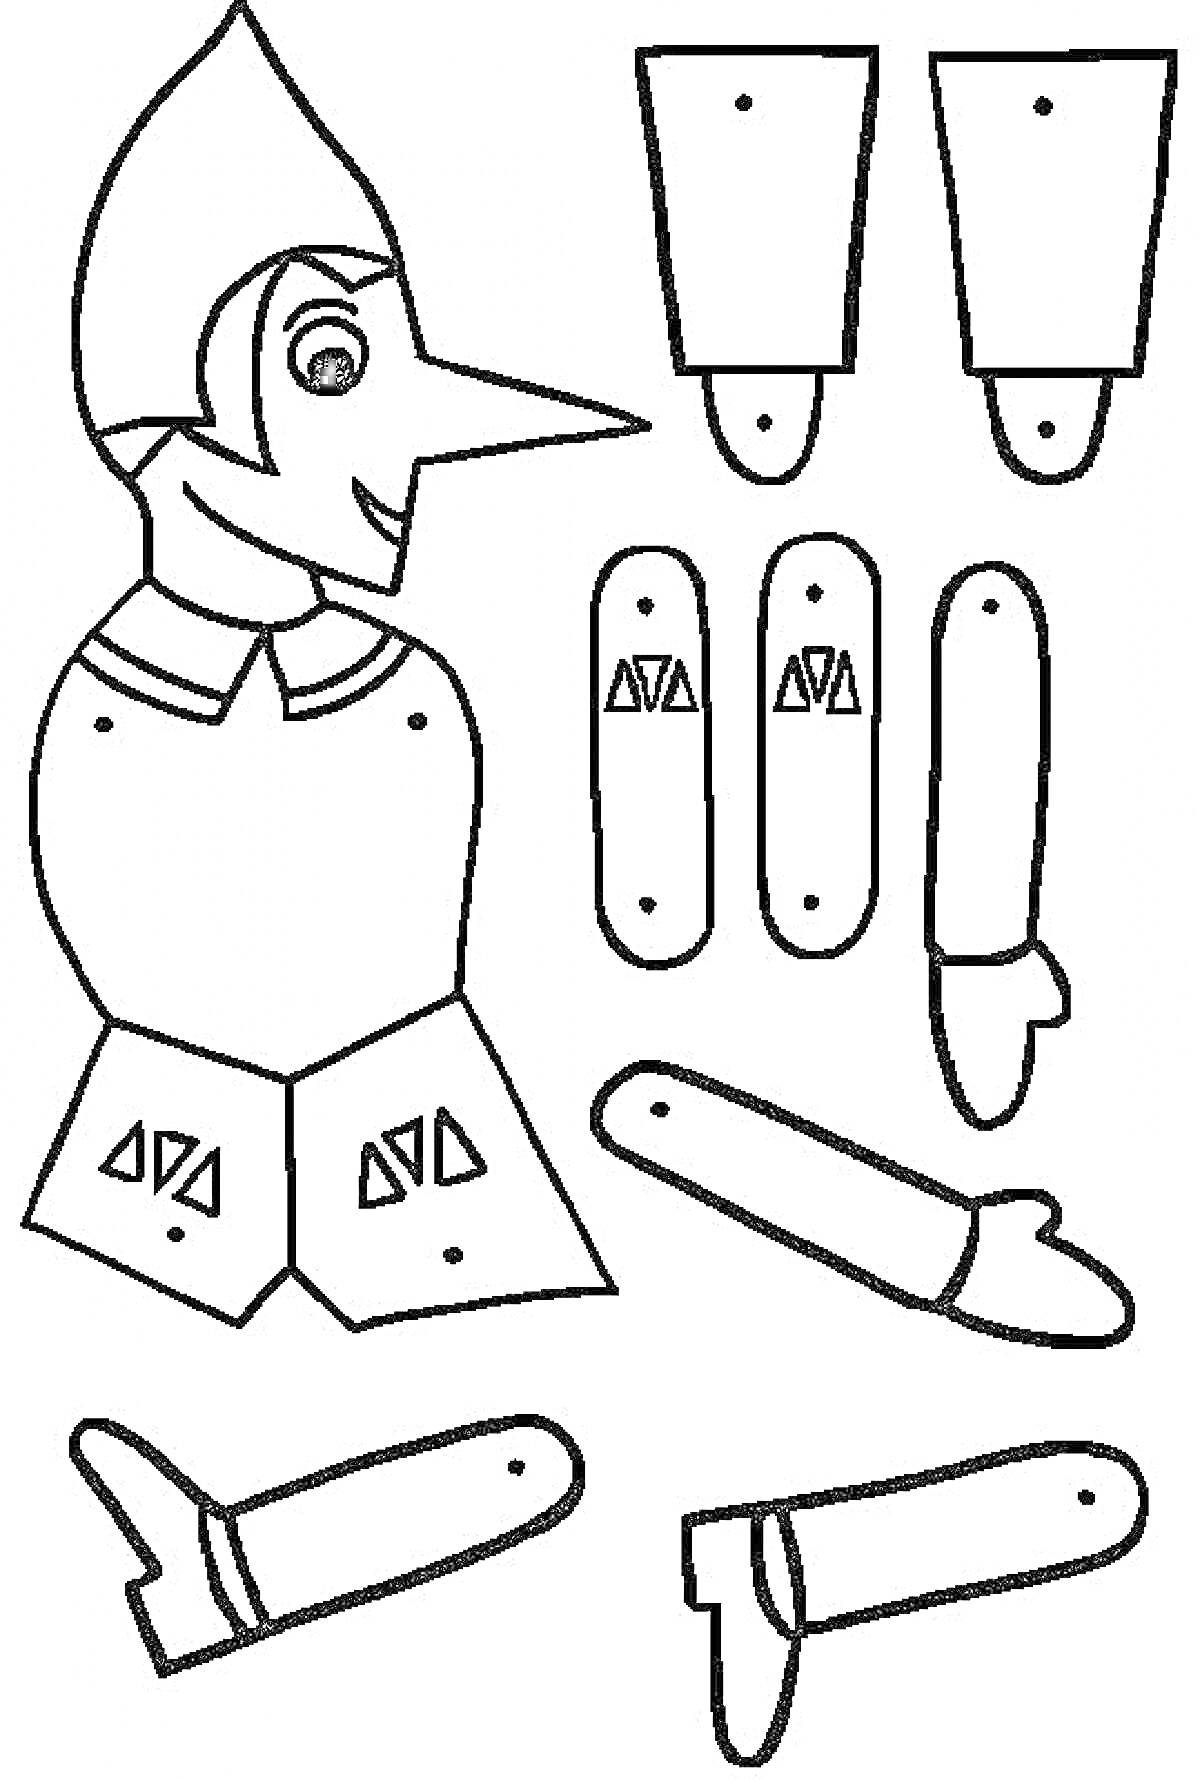 Марионетка с головой пиноккио и отдельными элементами туловища, рук и ног